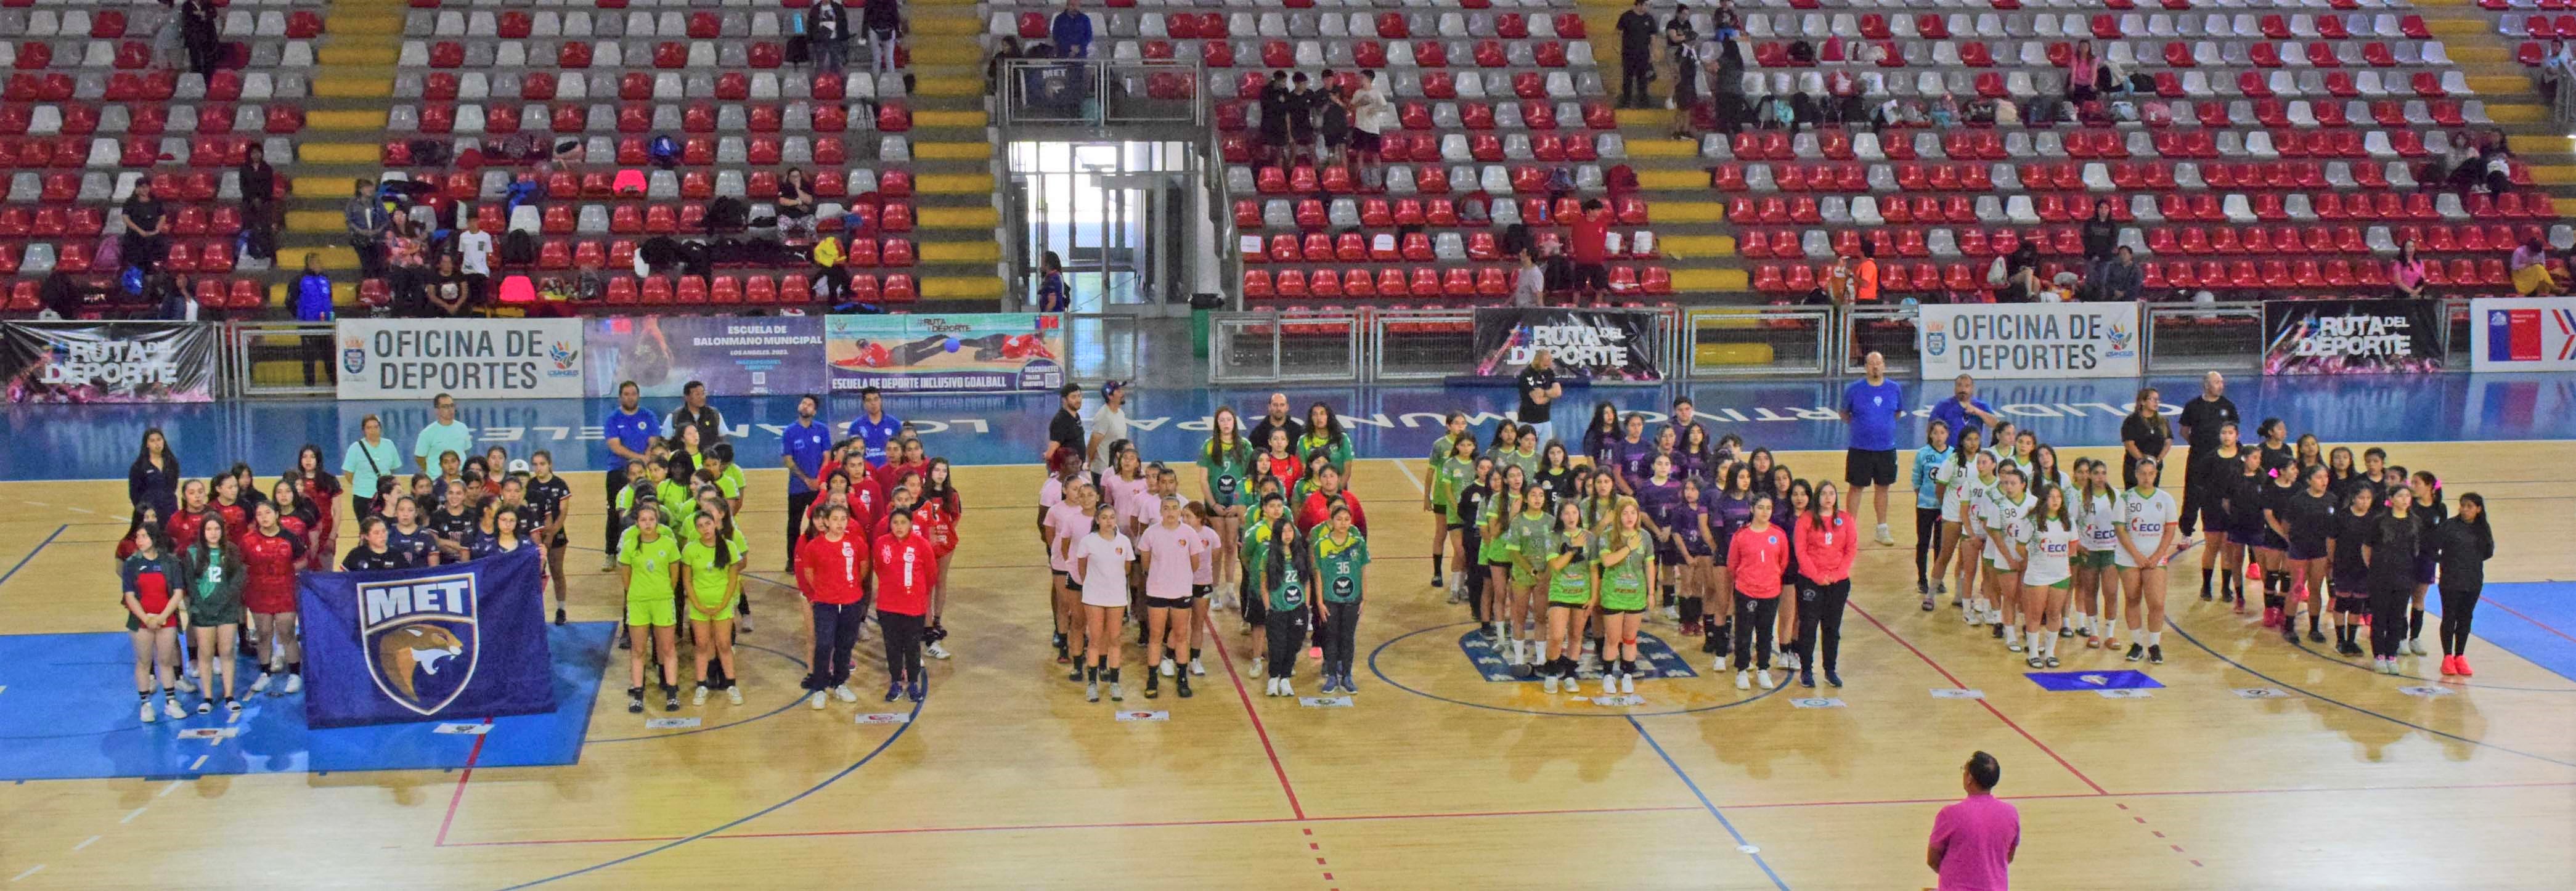 Las delegaciones presentes en el Polideportivo / La Tribuna